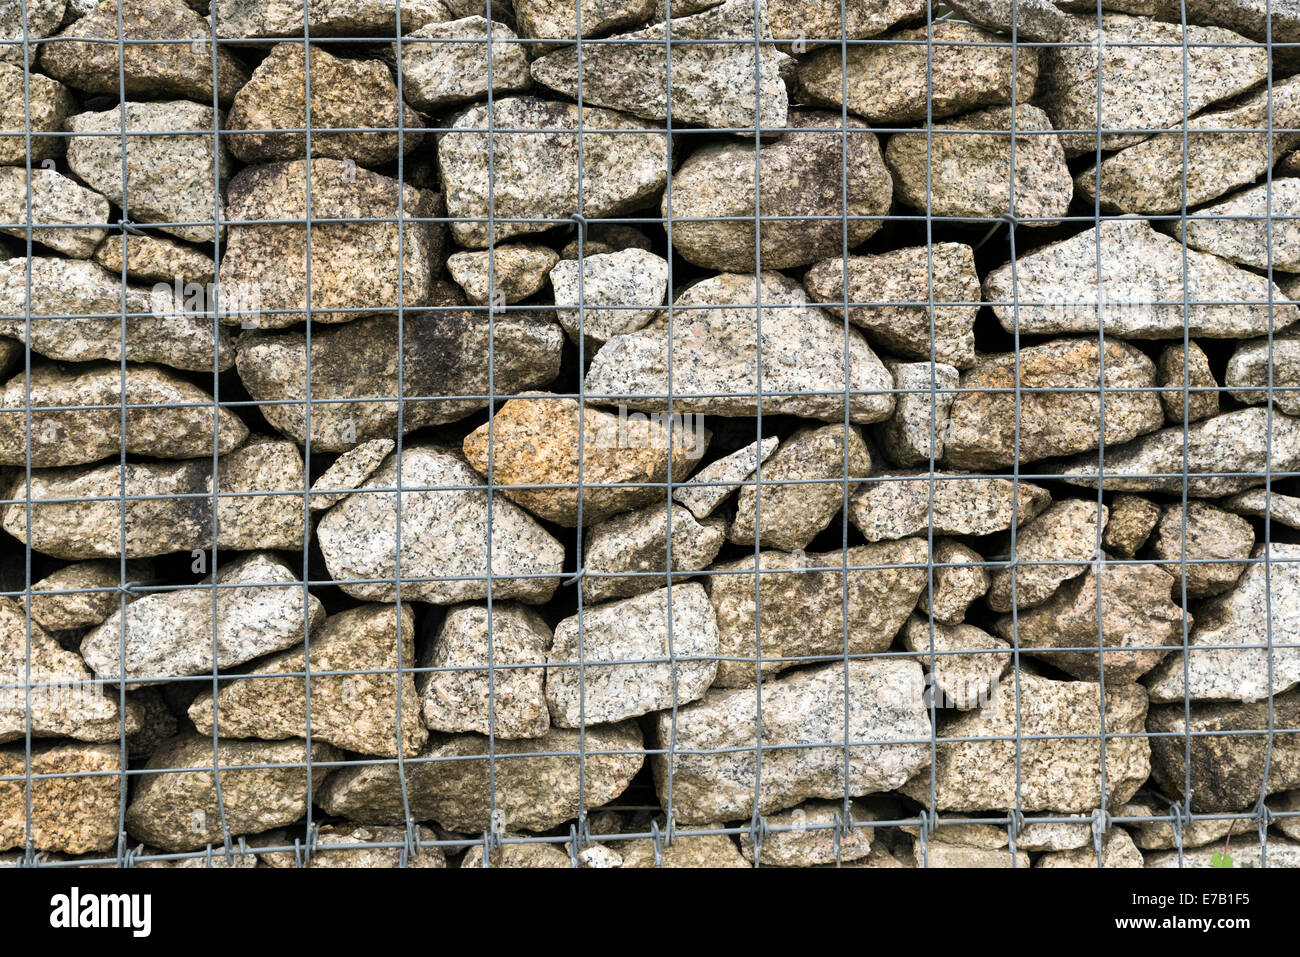 Eine riesige Gabione Wand als ein Zaun an einem Hang. Bunten Steinen ideal für verschiedene Arten von Hintergründen. Stockfoto